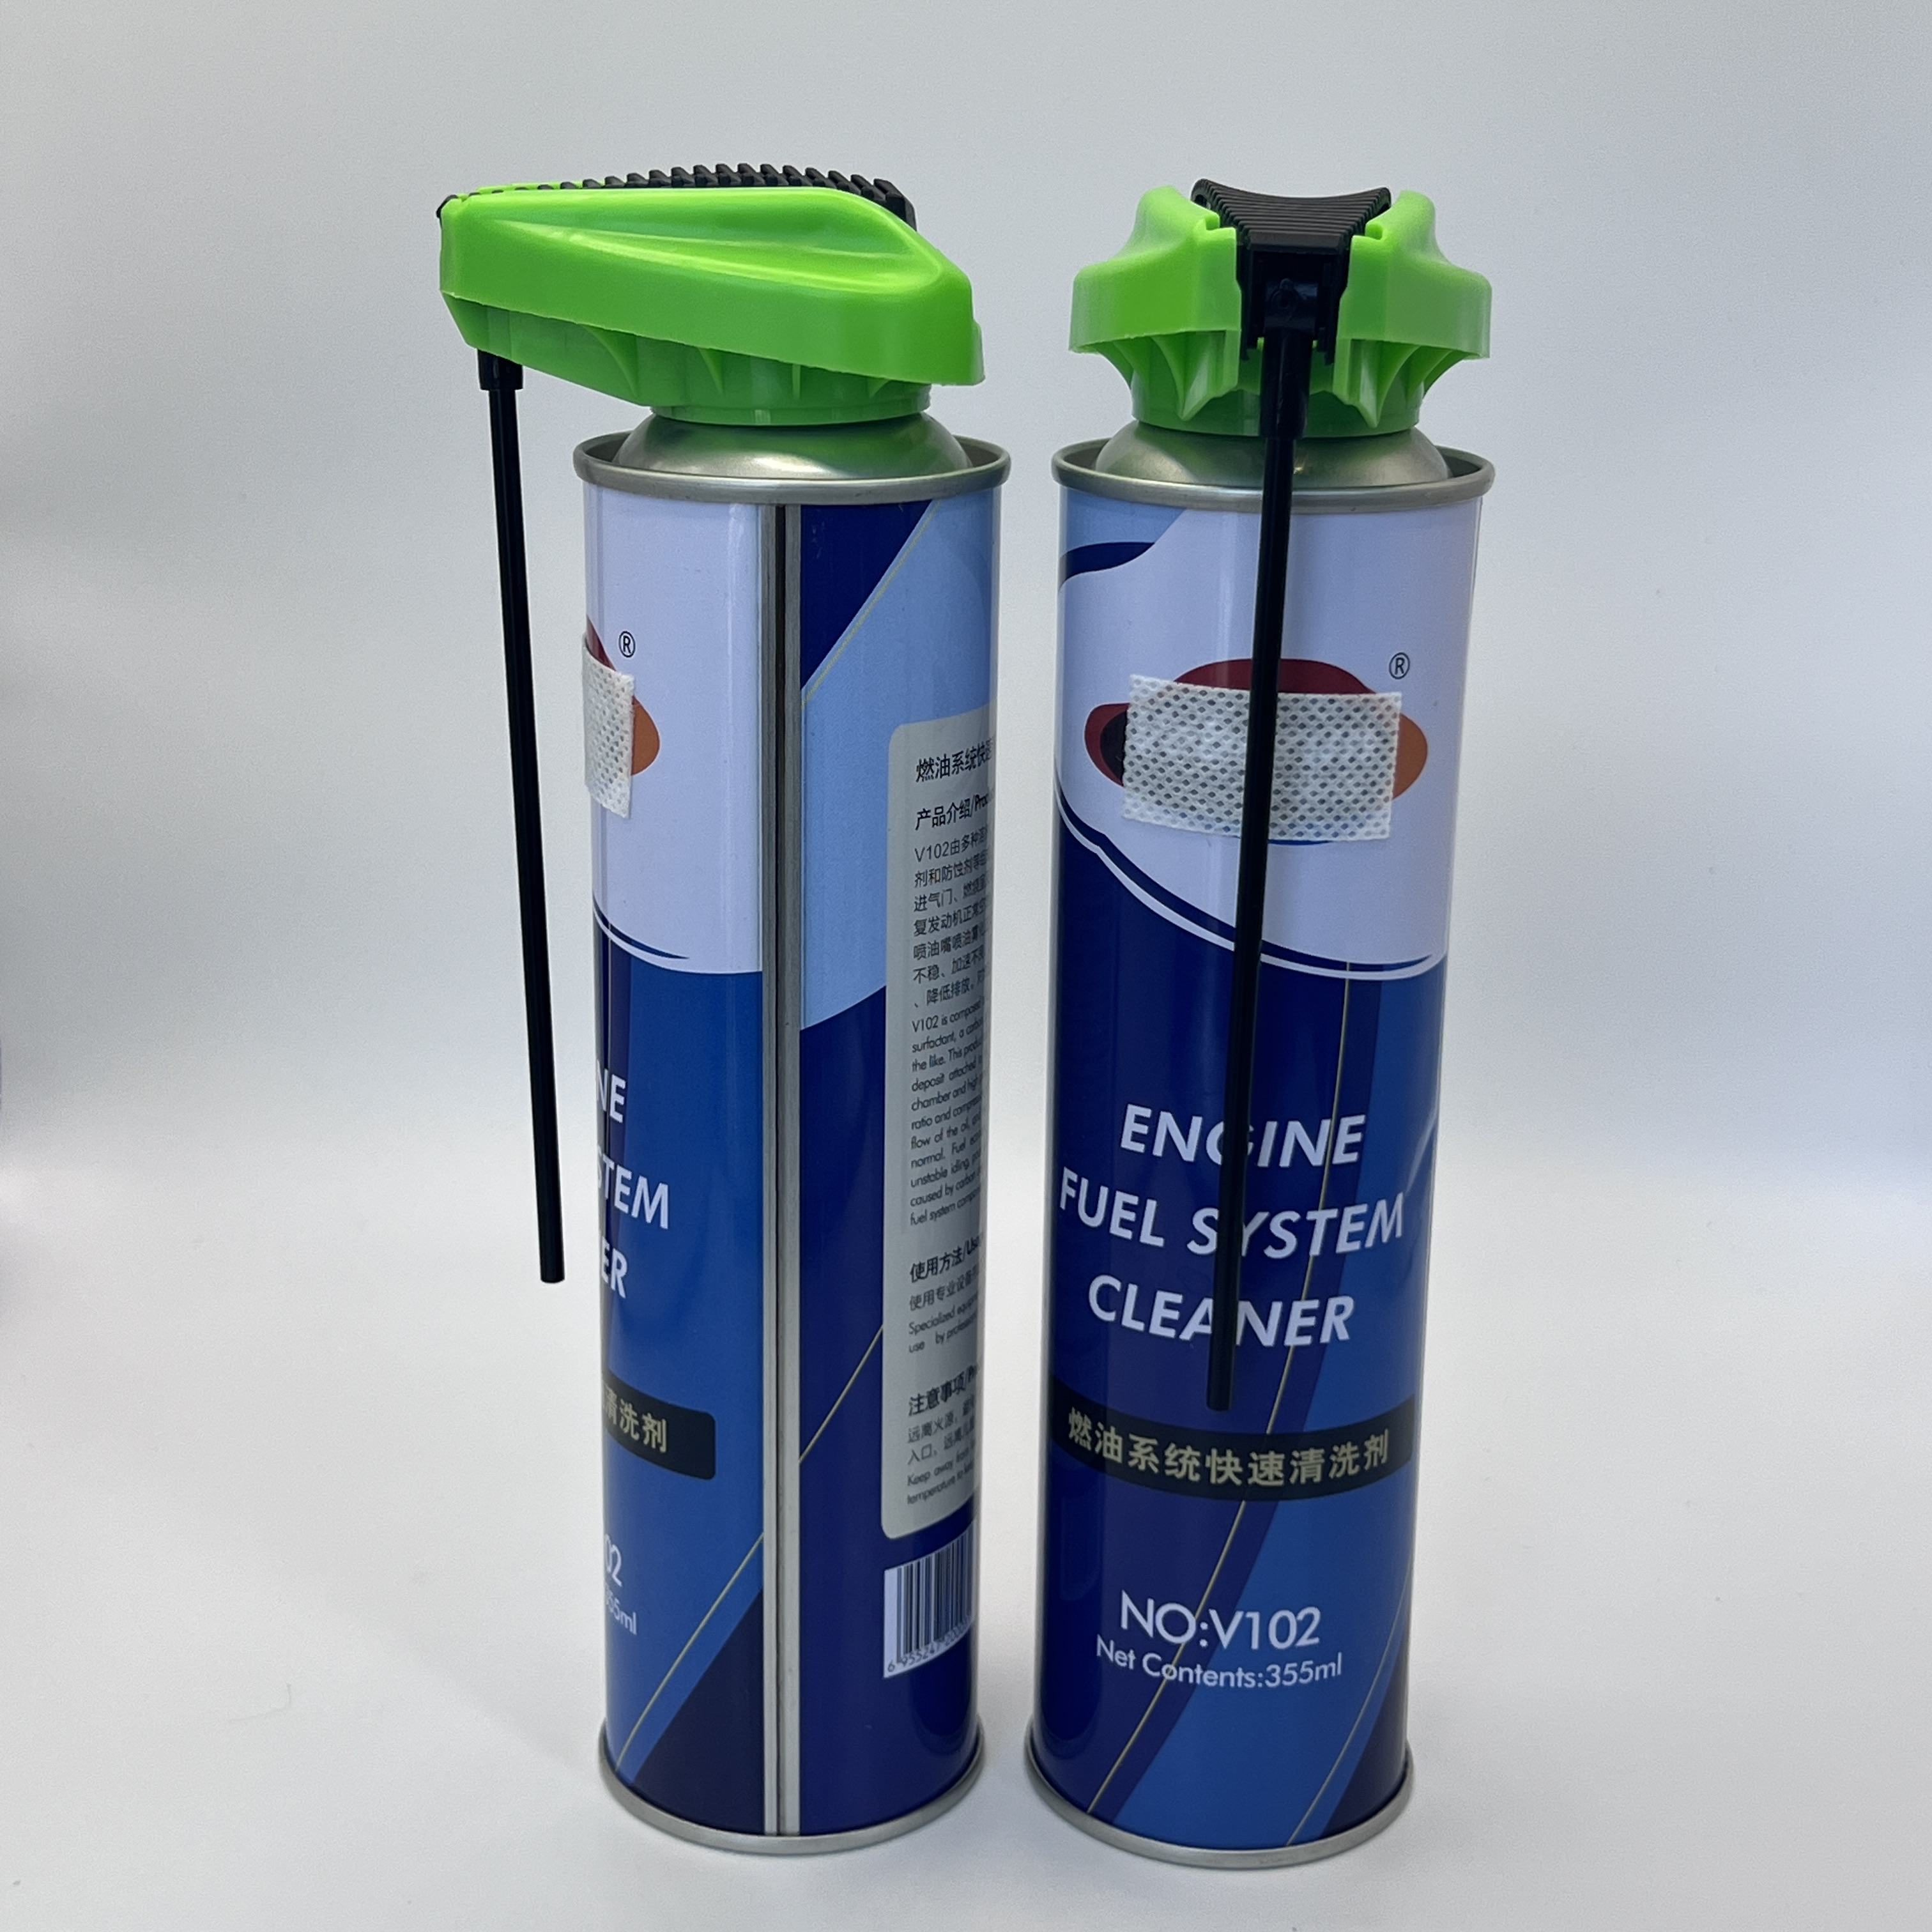 Boquilla de aerosol de servicio pesado para limpieza industrial: duradera y eficiente